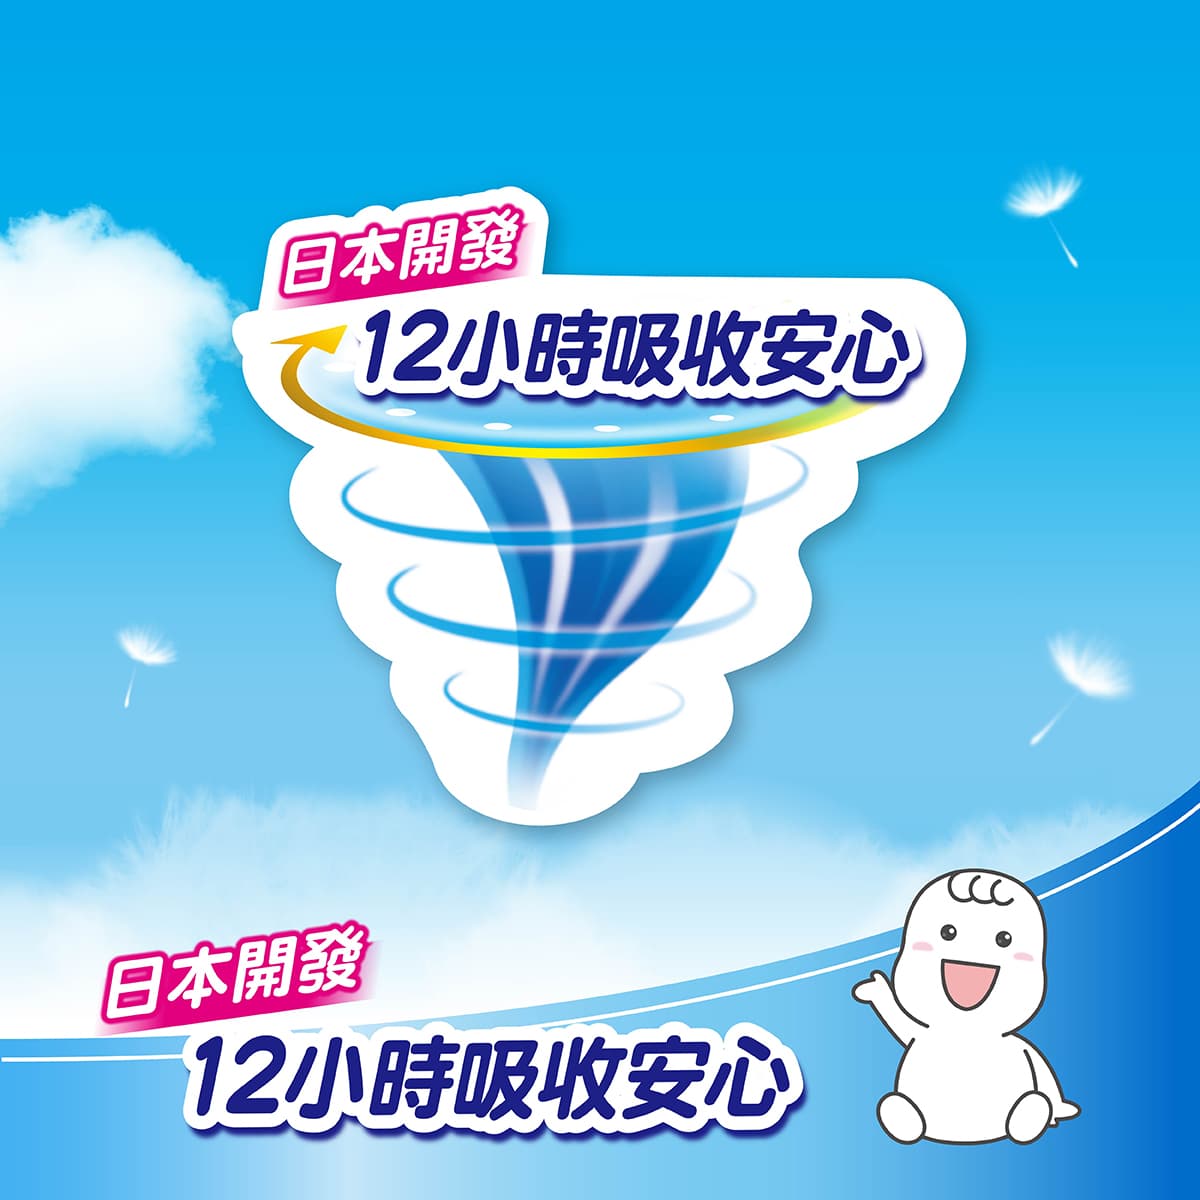 日本滿意寶寶瞬潔乾爽尿布 12小時安心吸收，防漏超舒適。